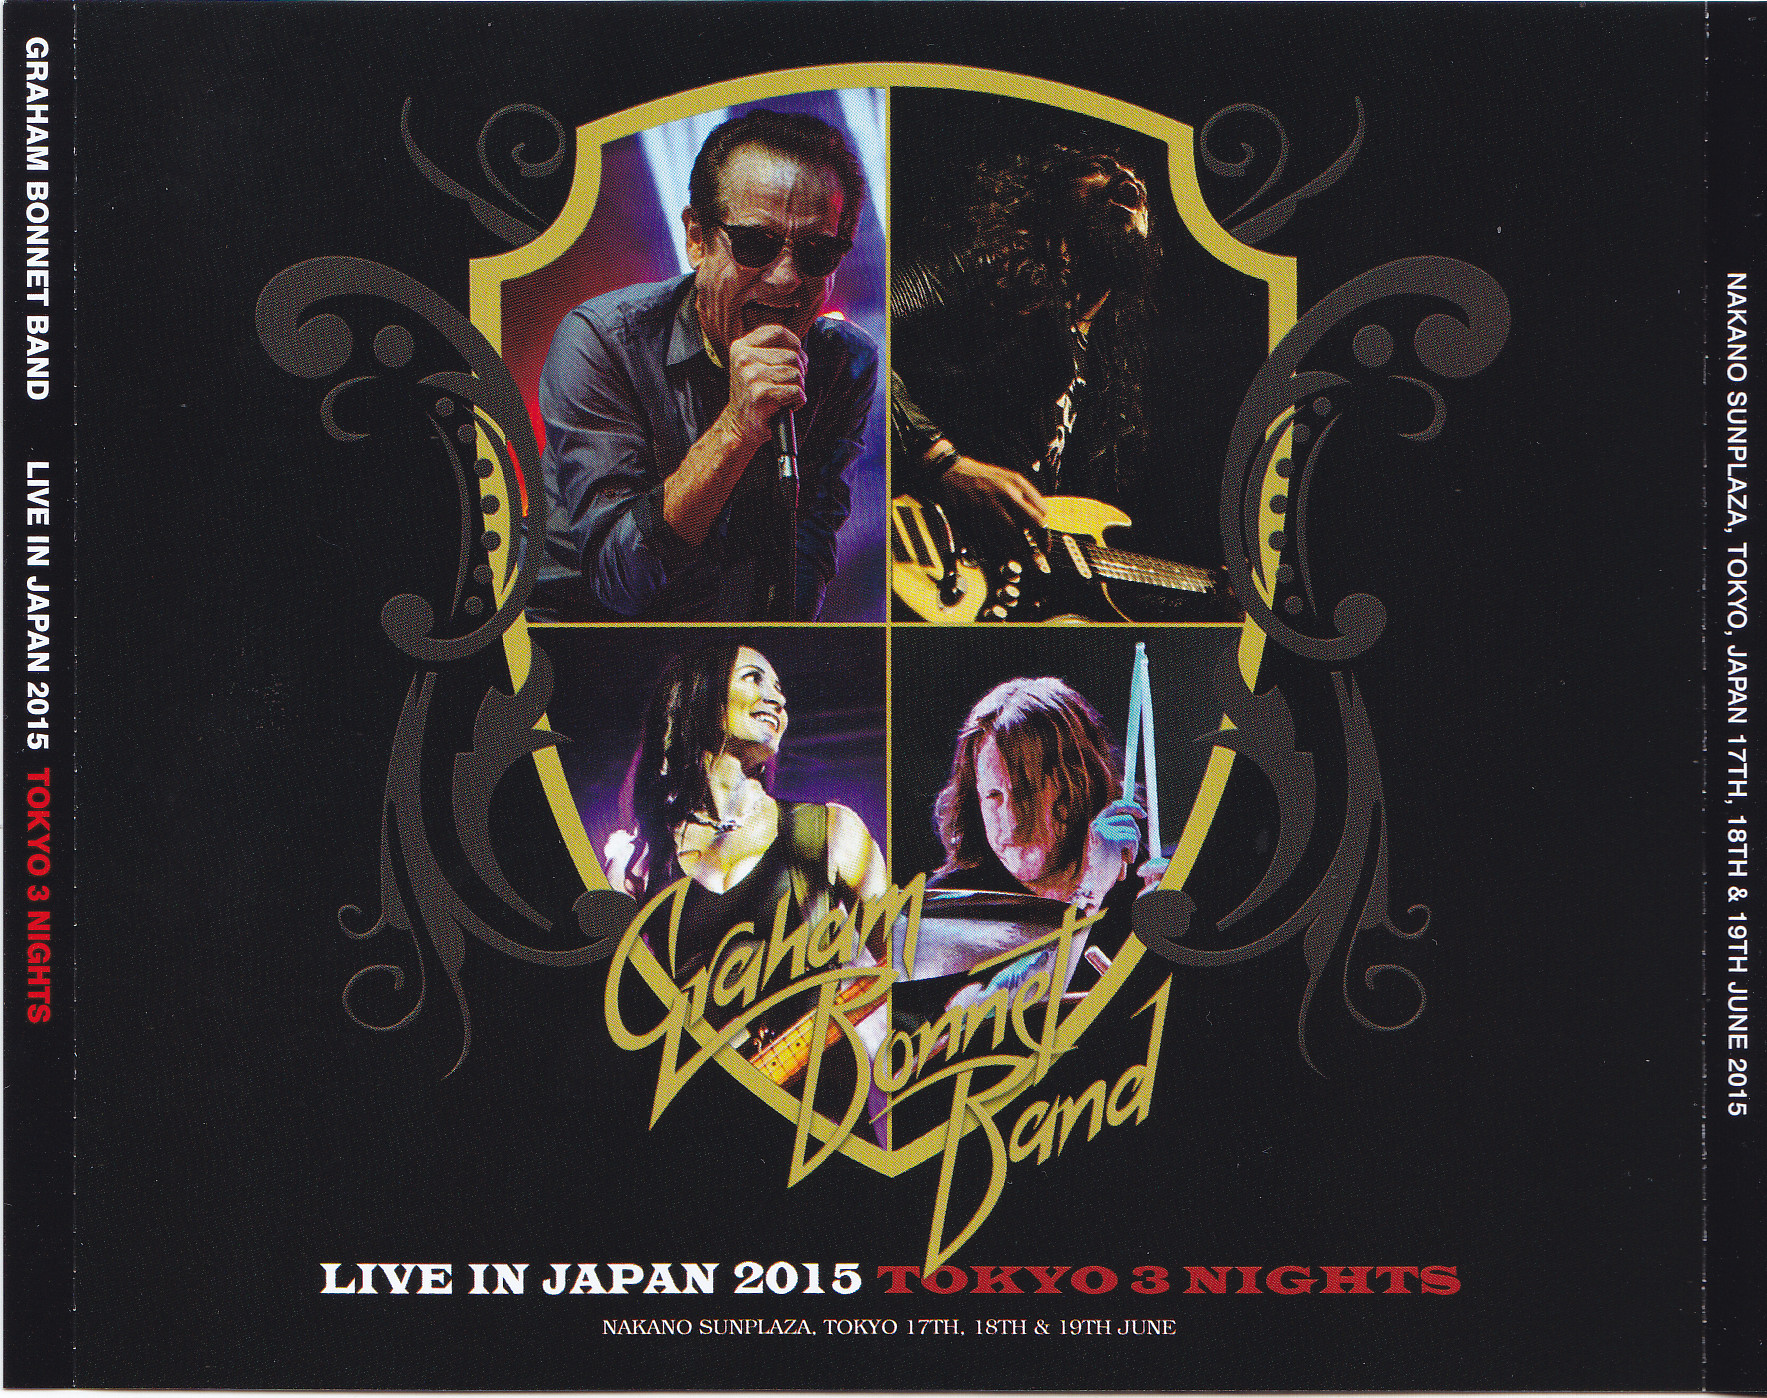 Graham Bonnet Band / Live In Japan 2015 Tokyo 3 Nights / 3CD – GiGinJapan